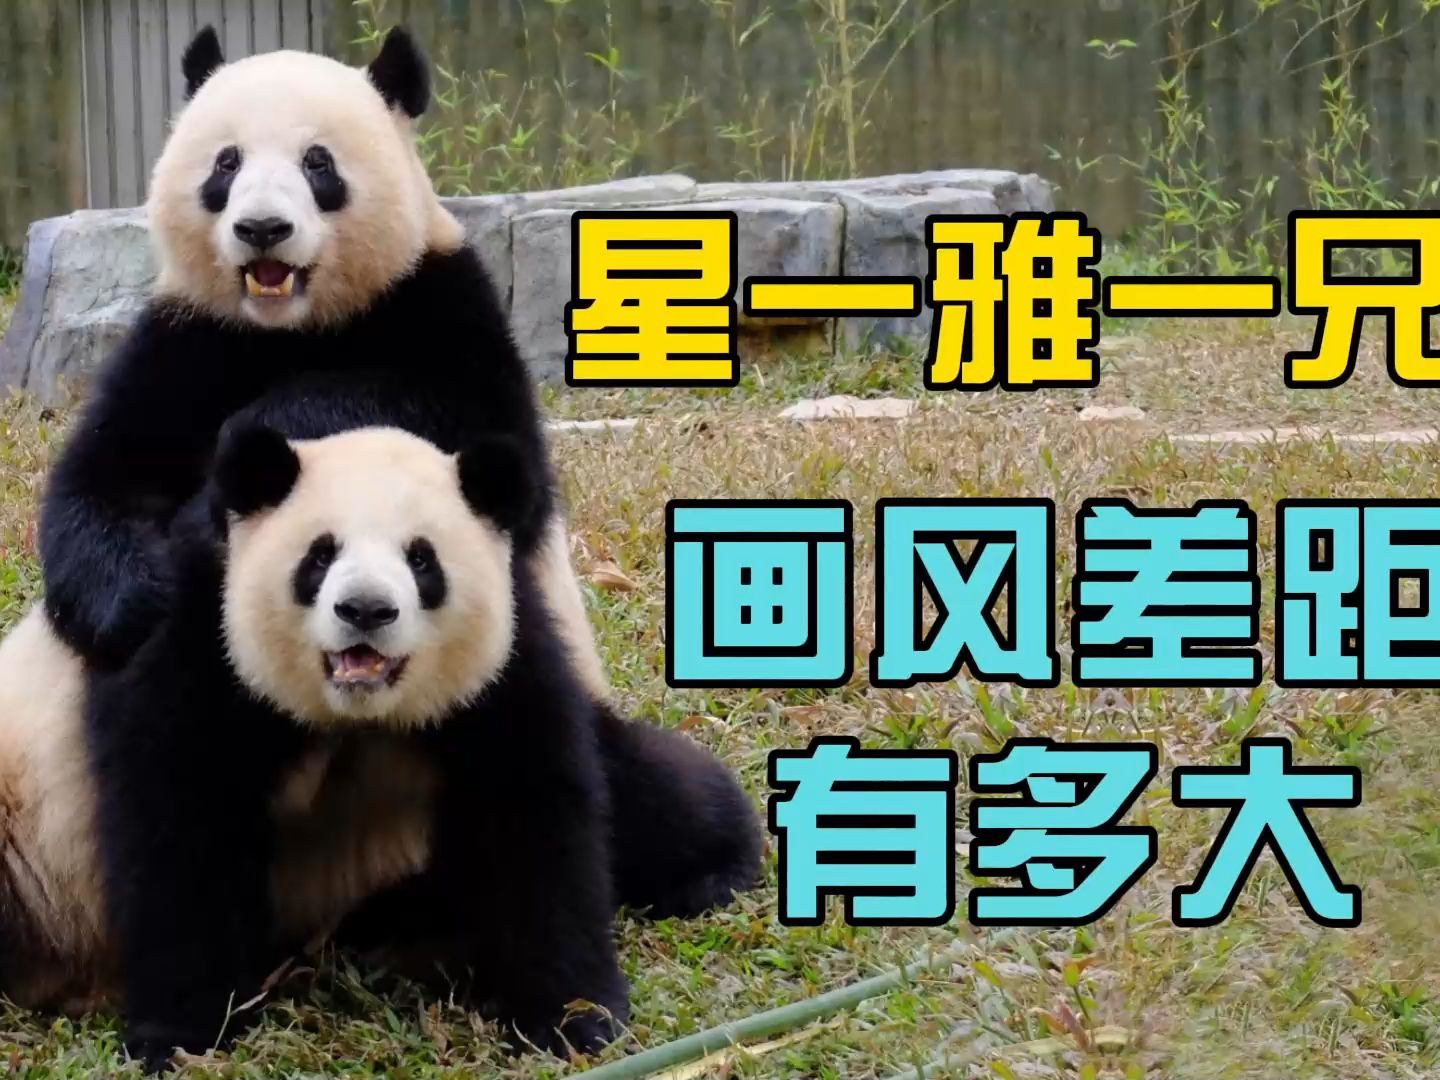 星一和雅一是一对画风迥异的大熊猫兄妹。